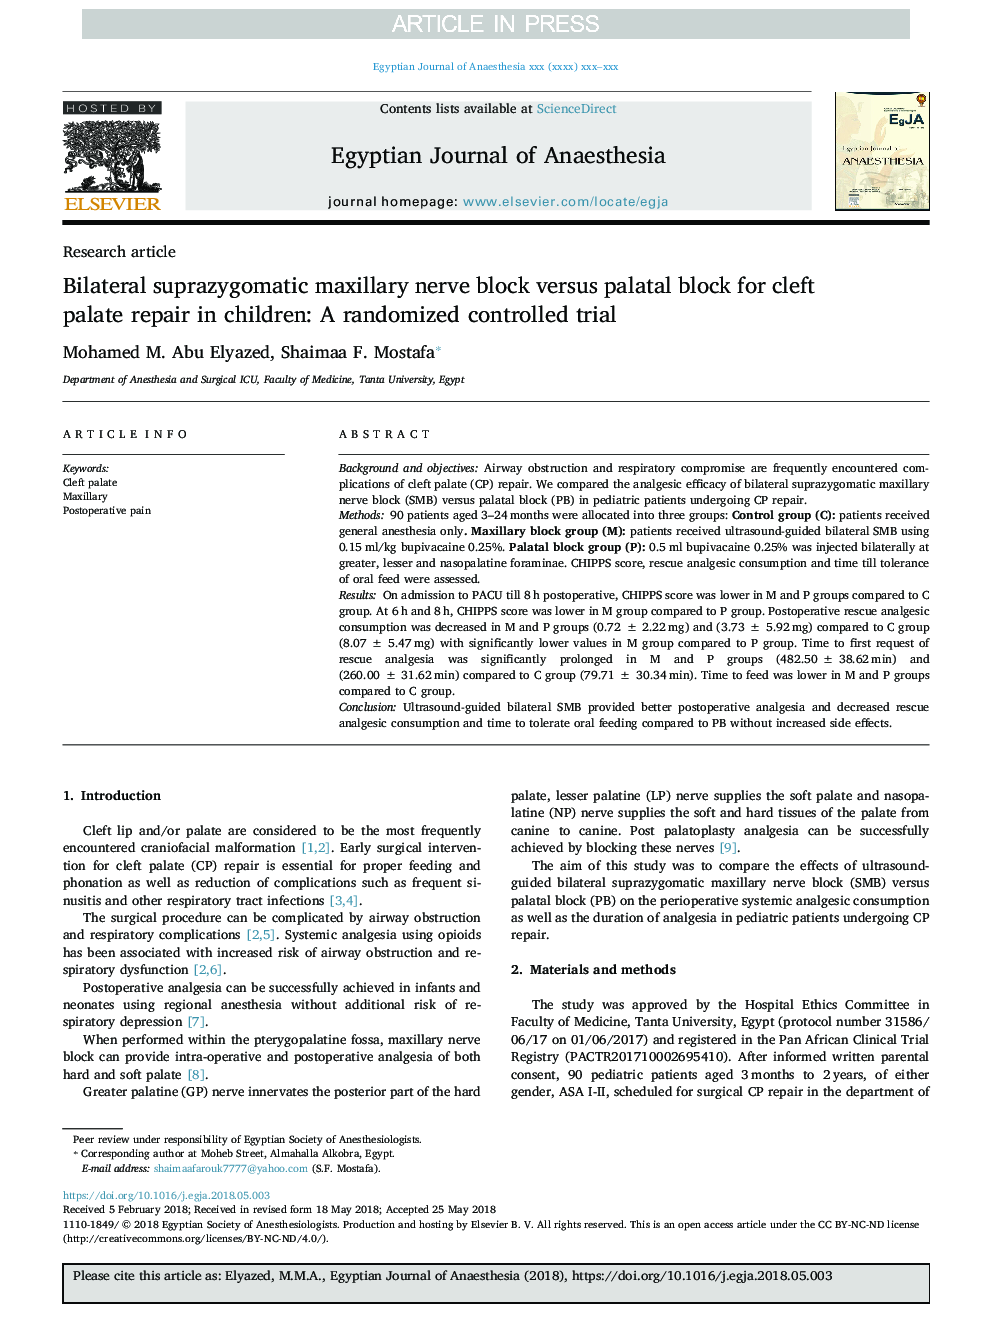 بلوک عصب ماگزیلا دو طرفه در مقابل بلوک پالادی برای بازسازی شکاف شکم در کودکان: یک کارآزمایی کنترل شده تصادفی 